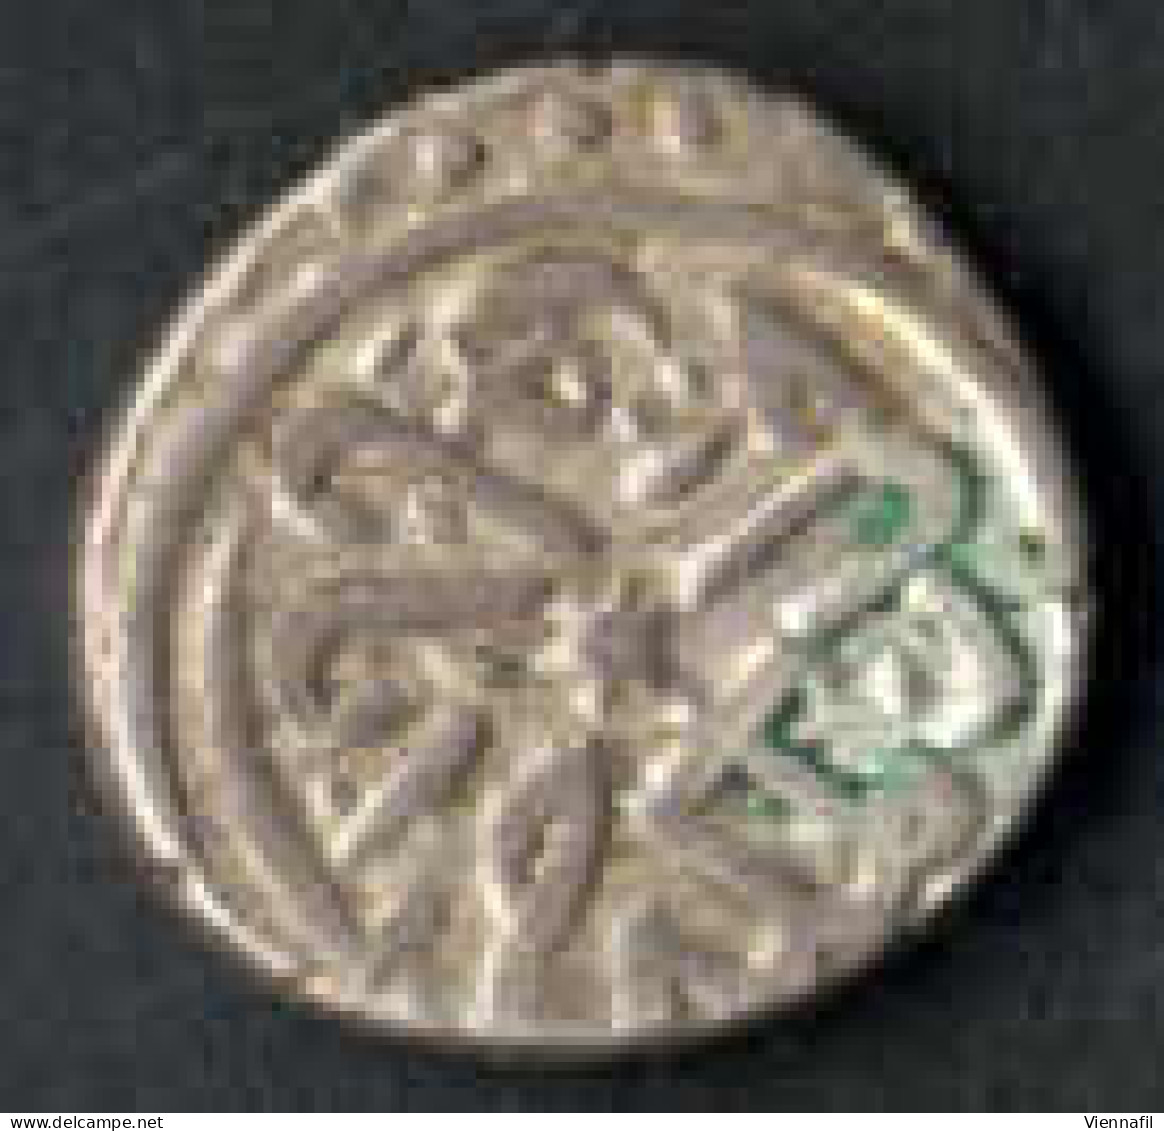 Mehmed II, 848-886AH 1444-1481, Akche Silber, 865 Ayasuliq Punkte 1/5, 3/4, 4/3, NP 86, Sehr Schön, 8 Stück - Islamic